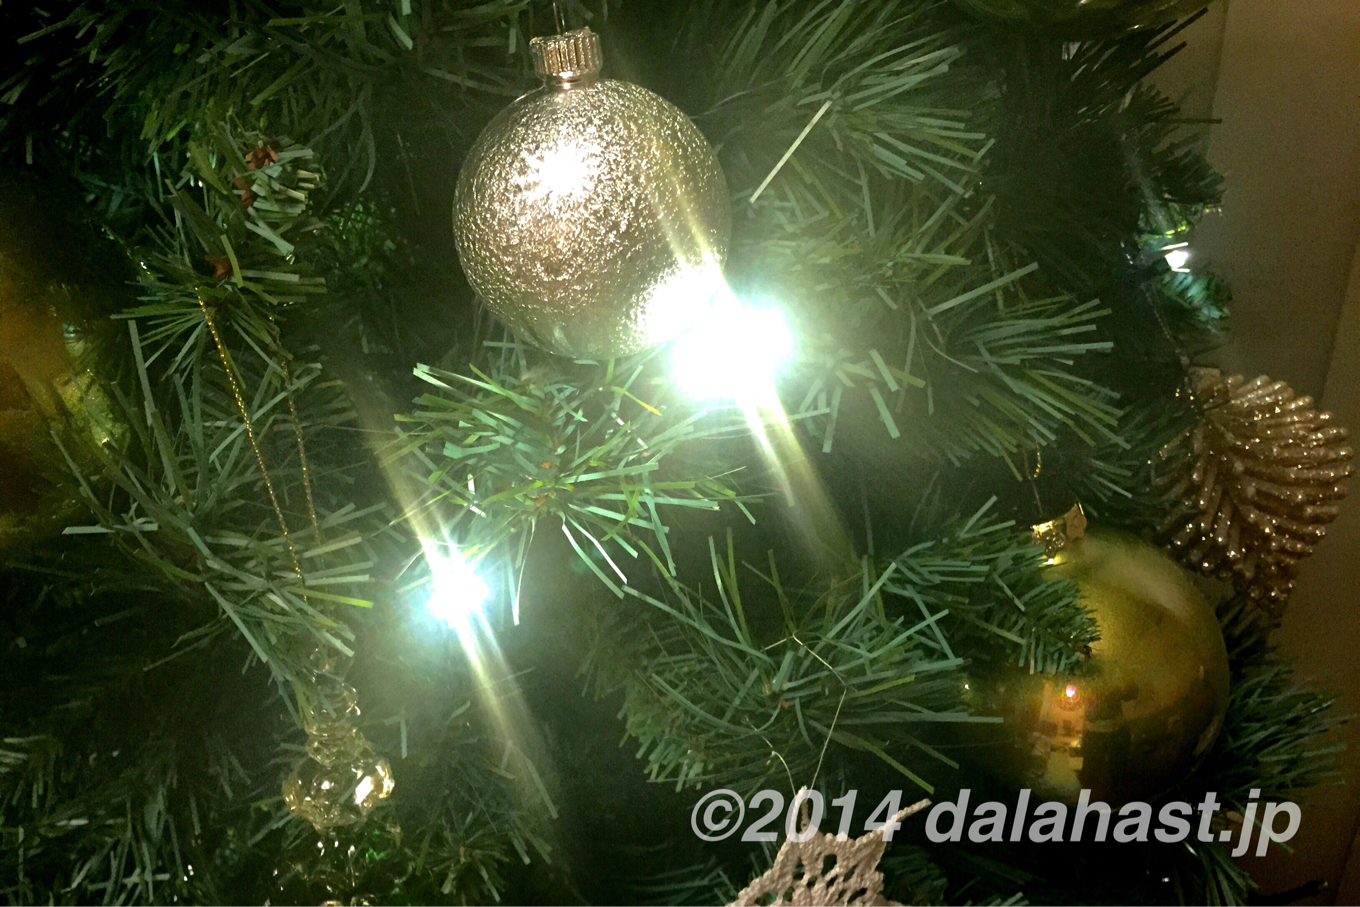 省エネなクリスマスツリーイルミネーションLEDライト | dalahast.jp 週末限定ビストロパパの日常関心空間